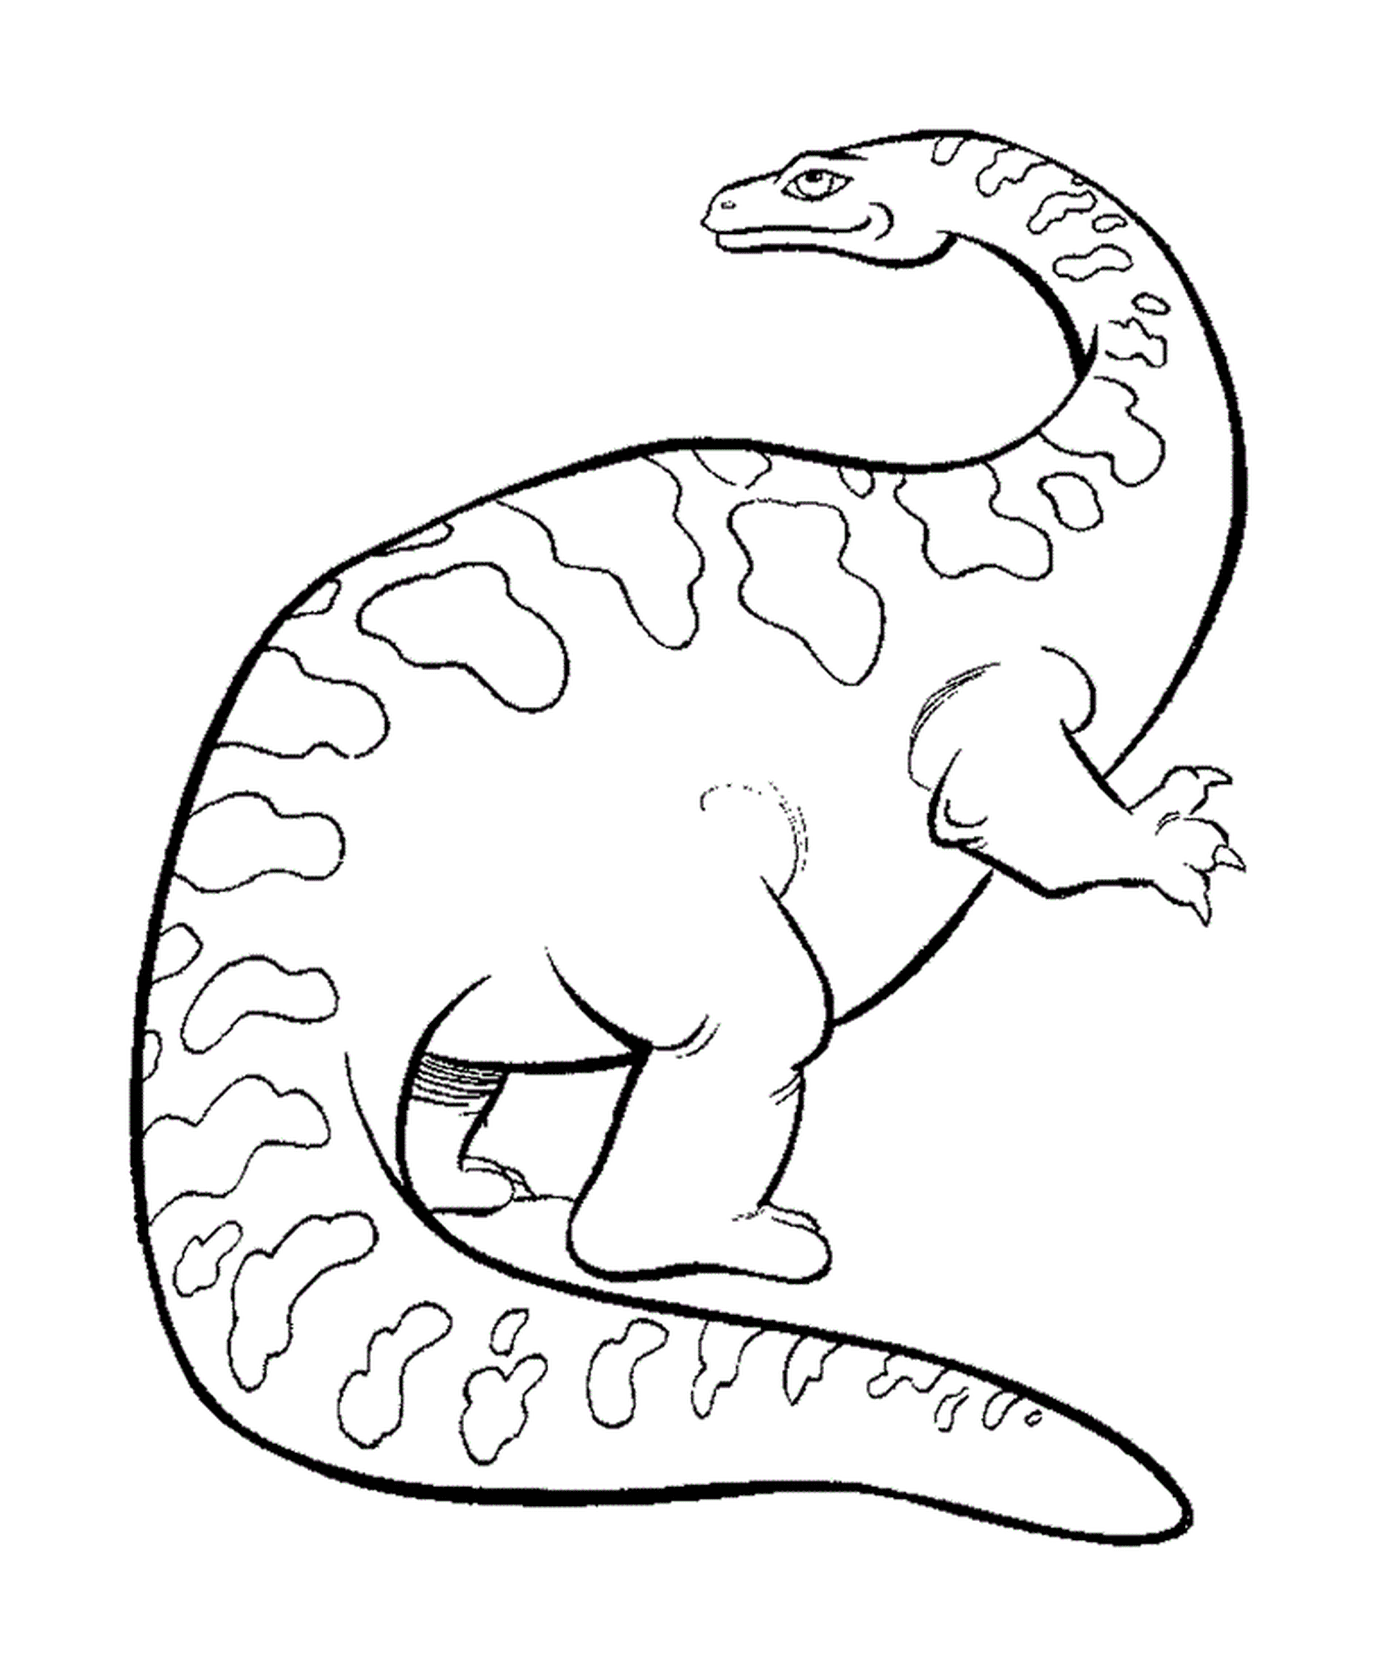  Desenho de um triceratops preto e branco 